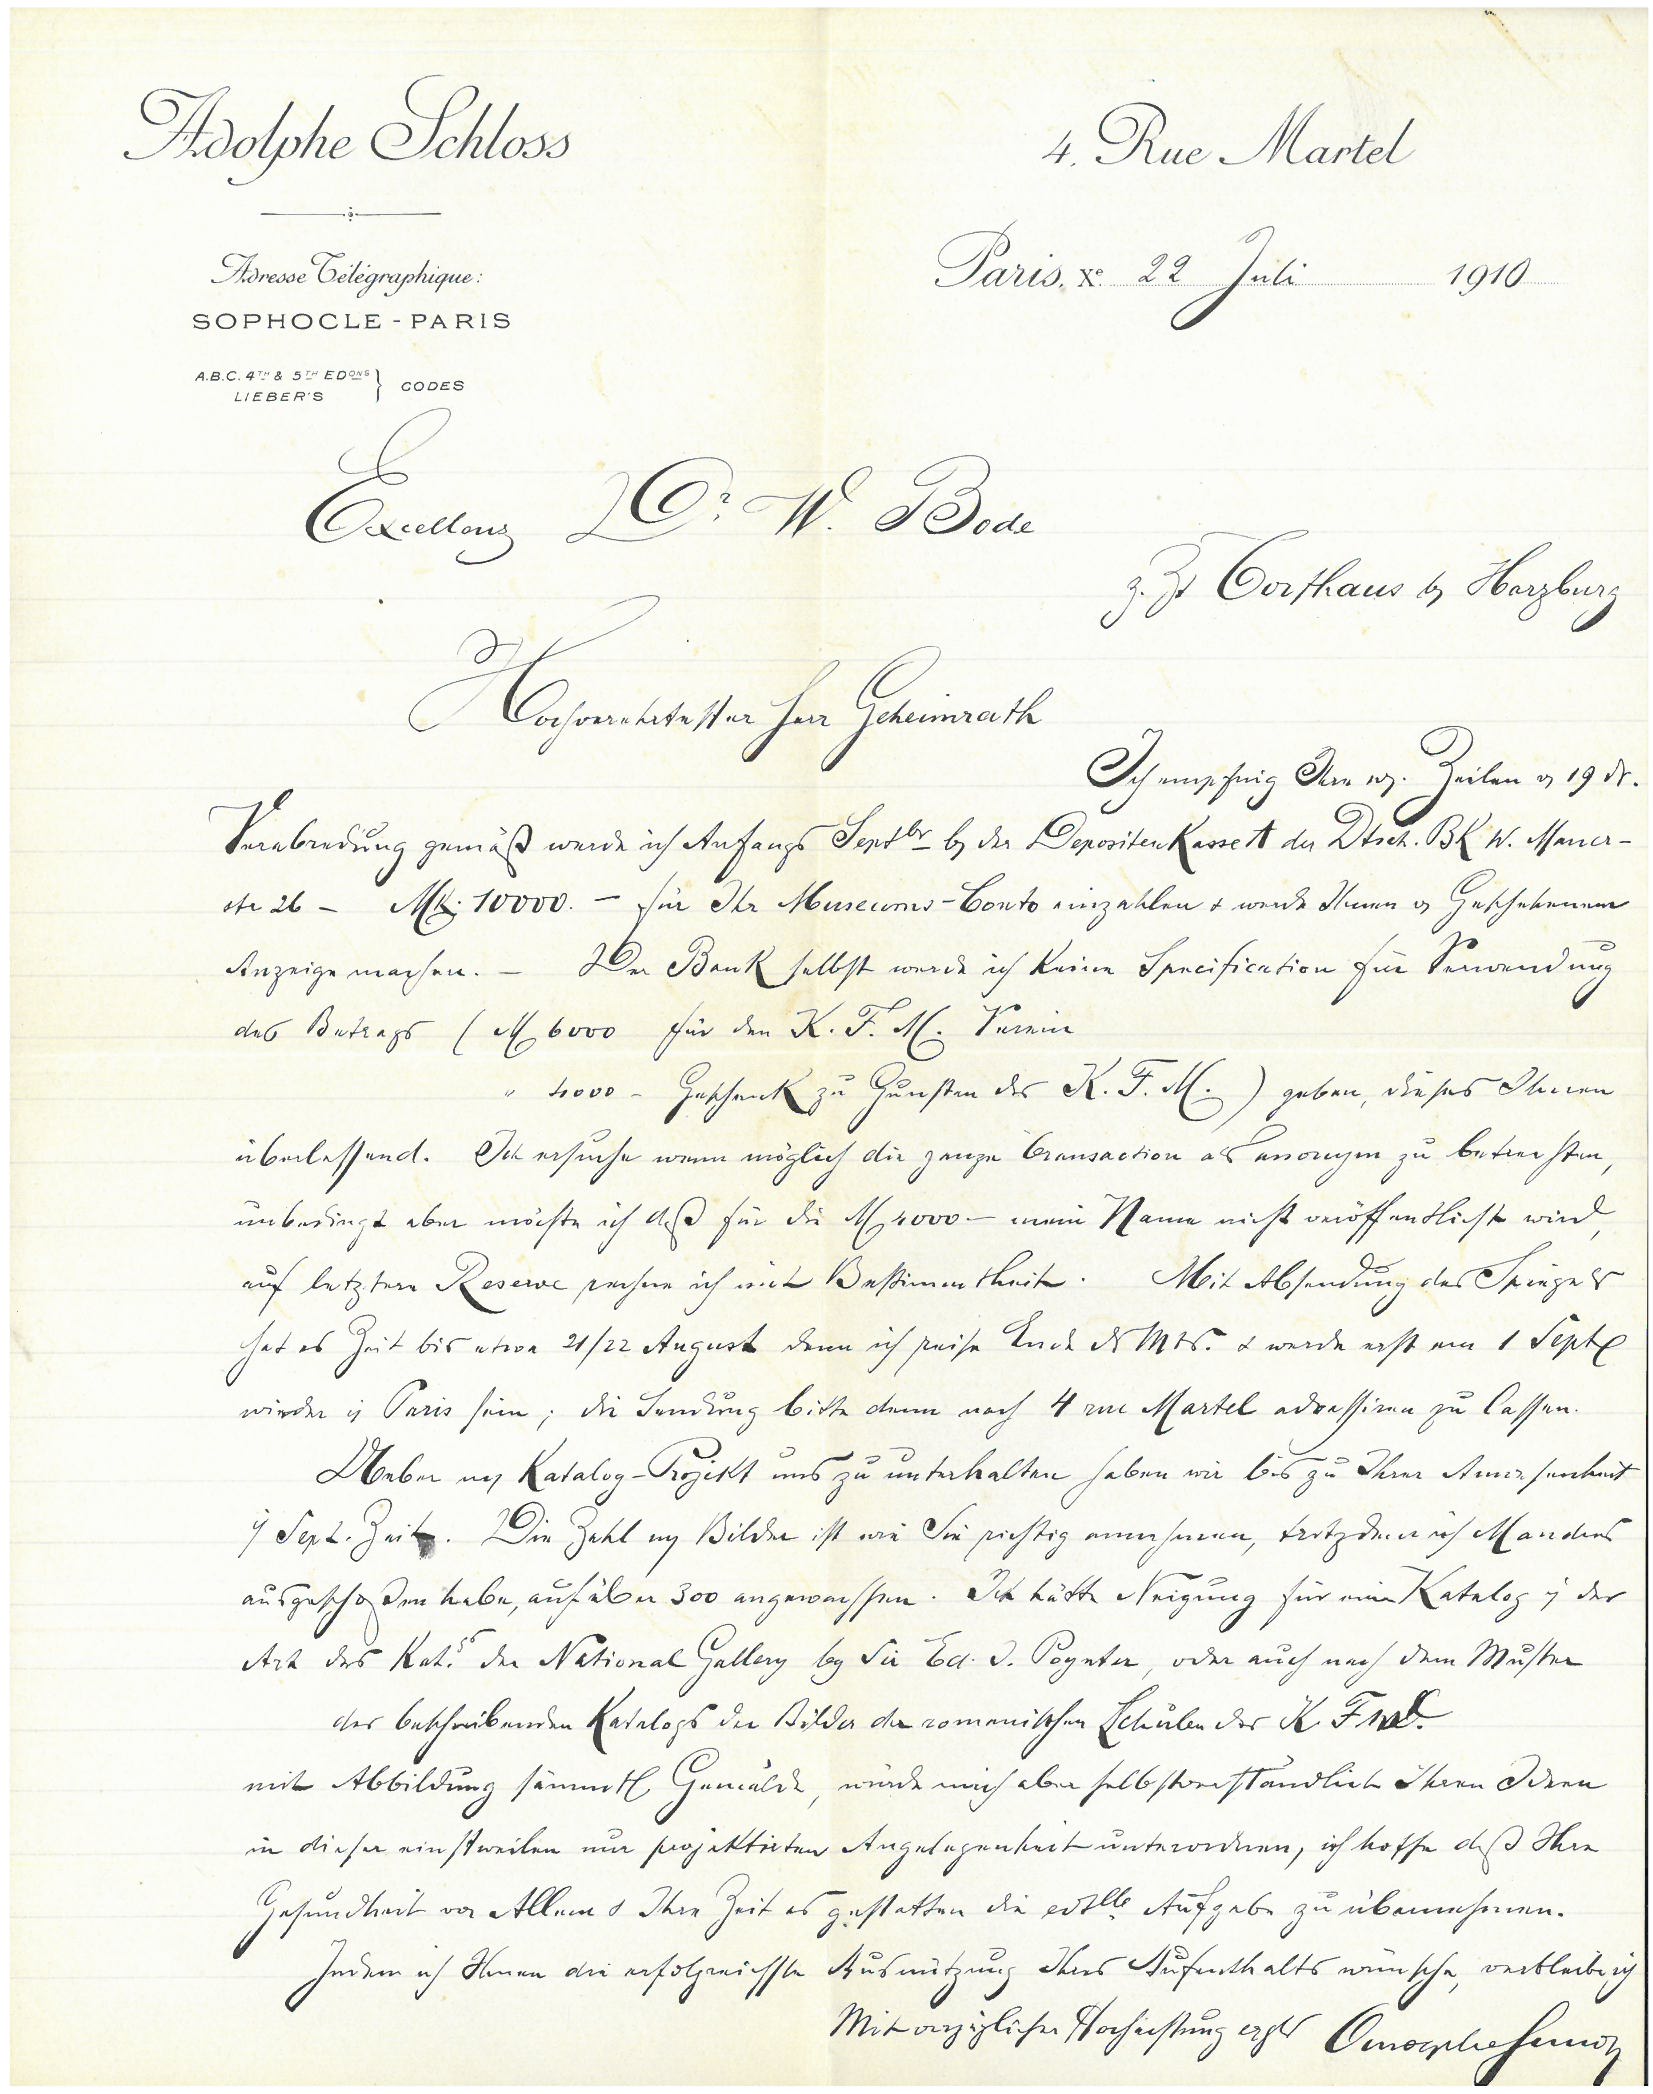 Image of Adolphe Schloss' handwritten letter to Wilhelm von Bode